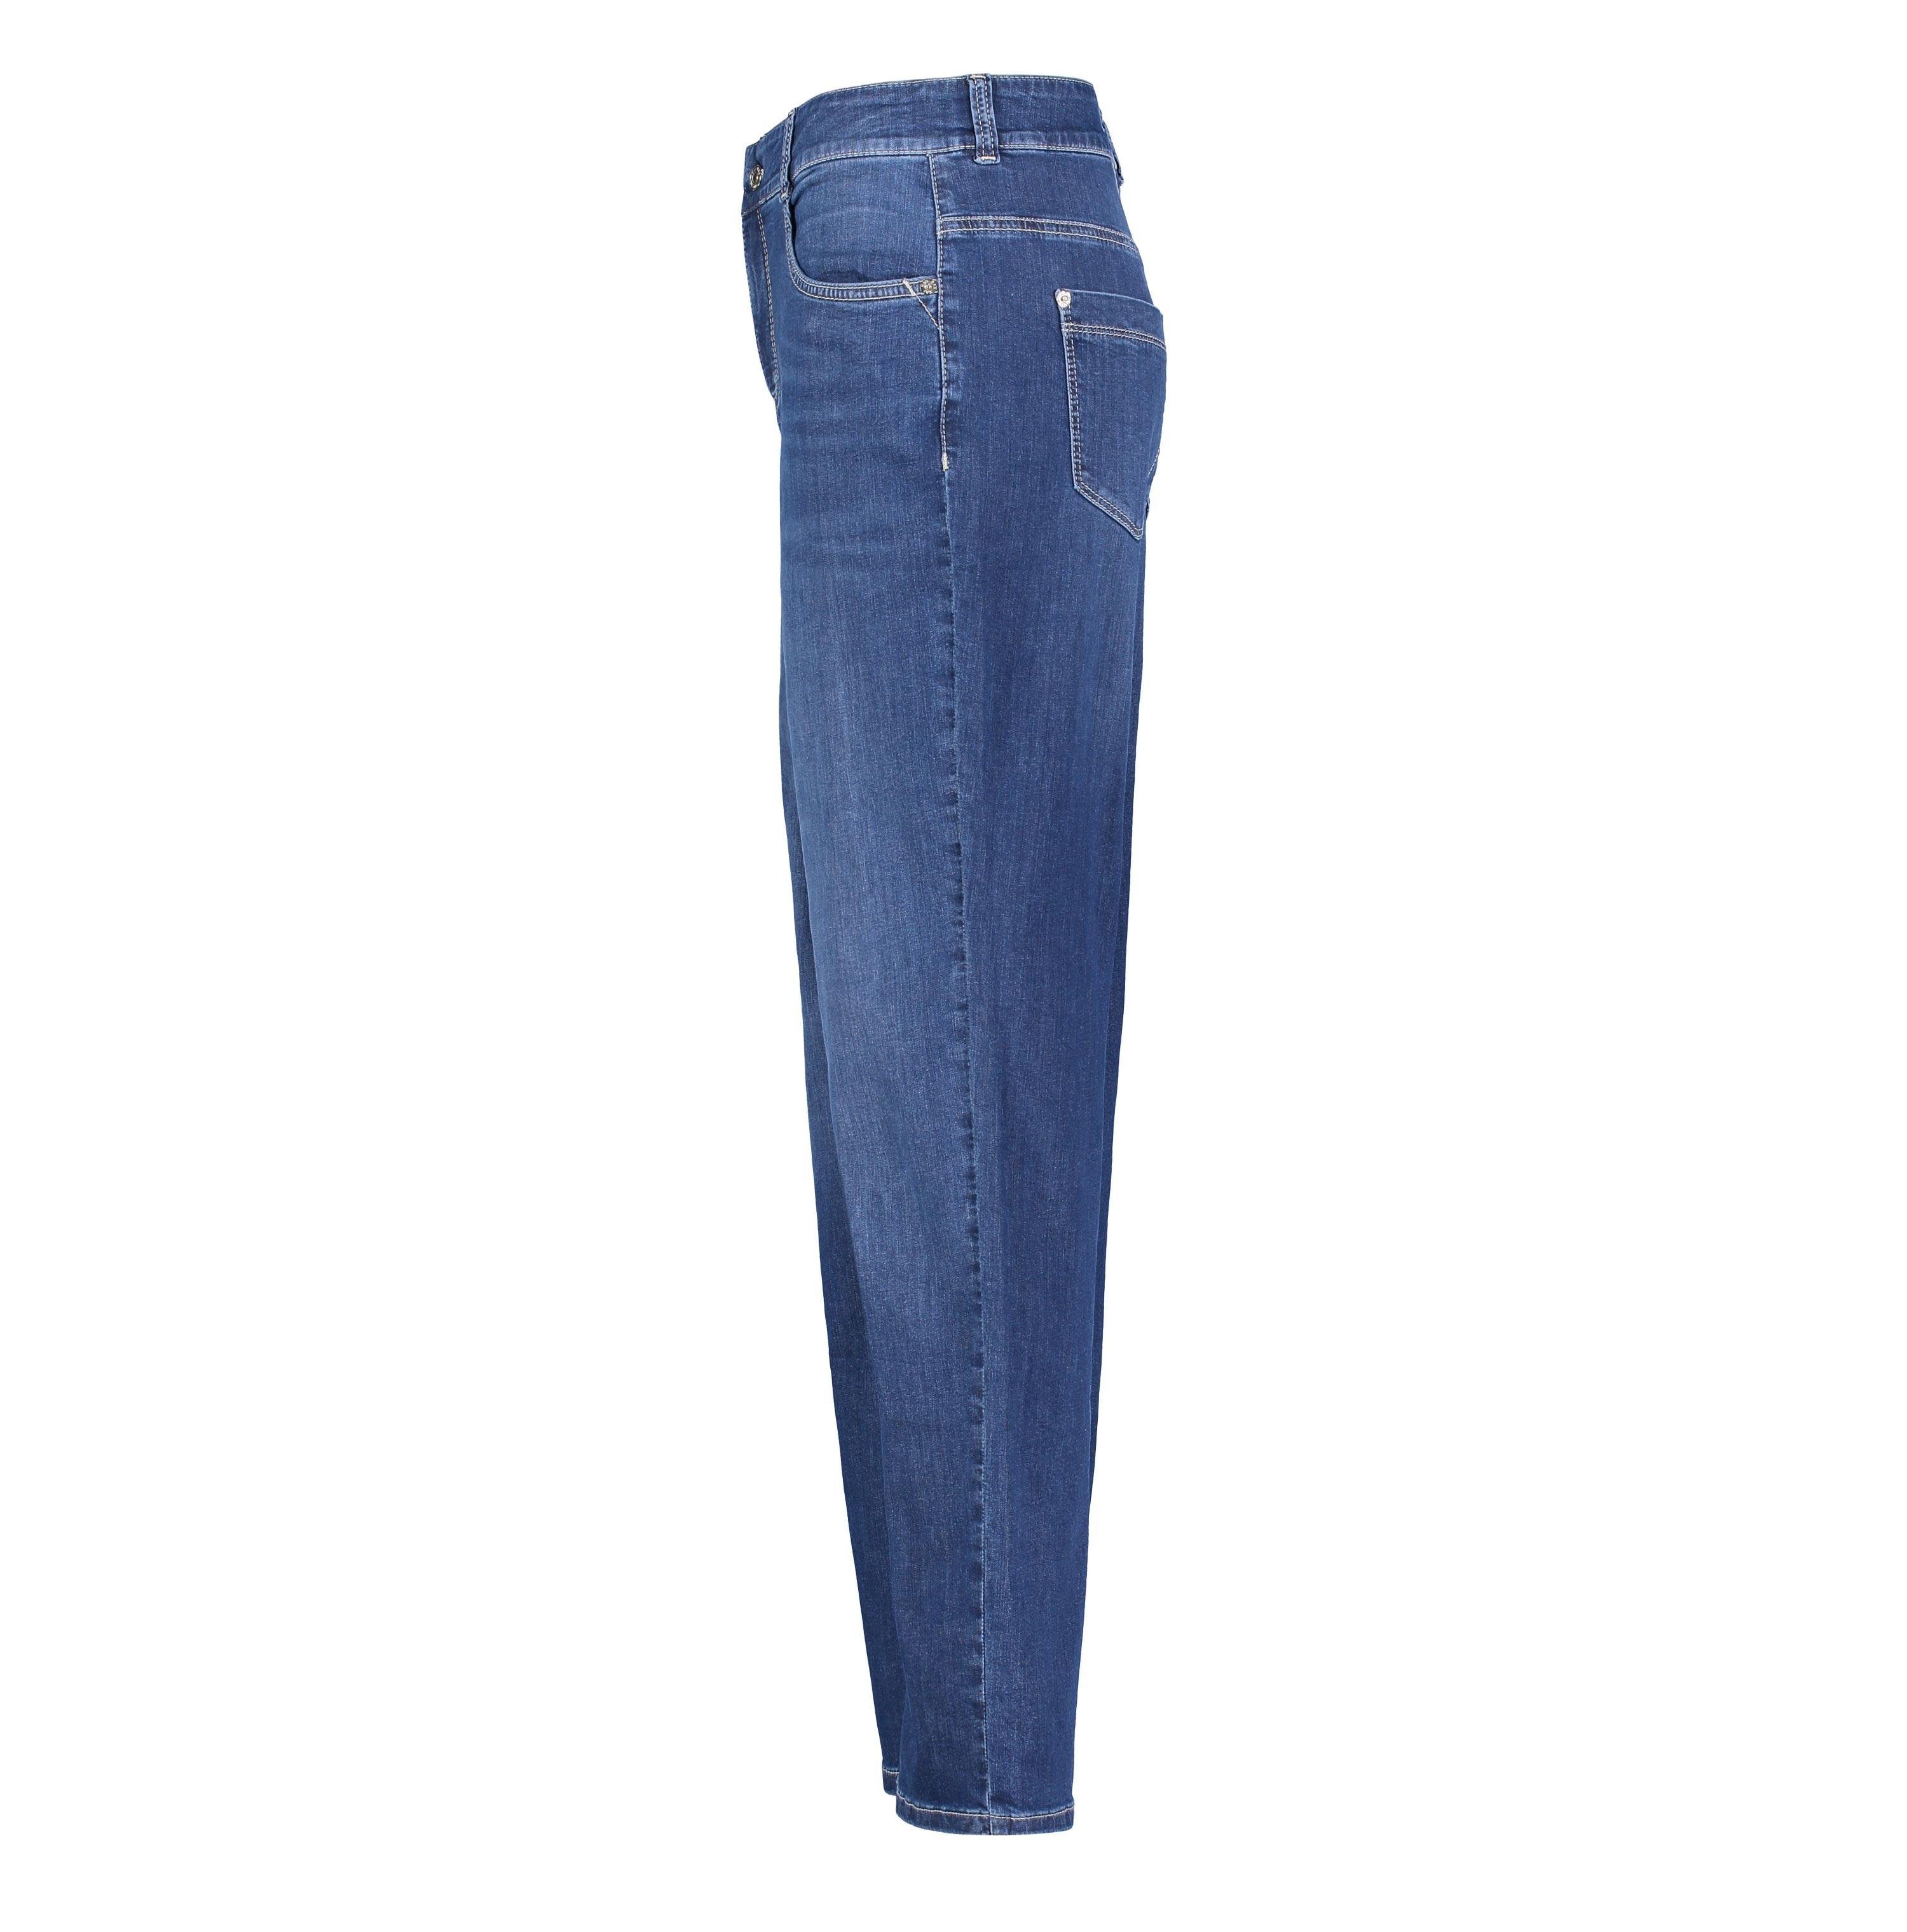 MAC Stretch-Jeans MAC GRACIA wash 5381-90-0391 basic dark blue D883